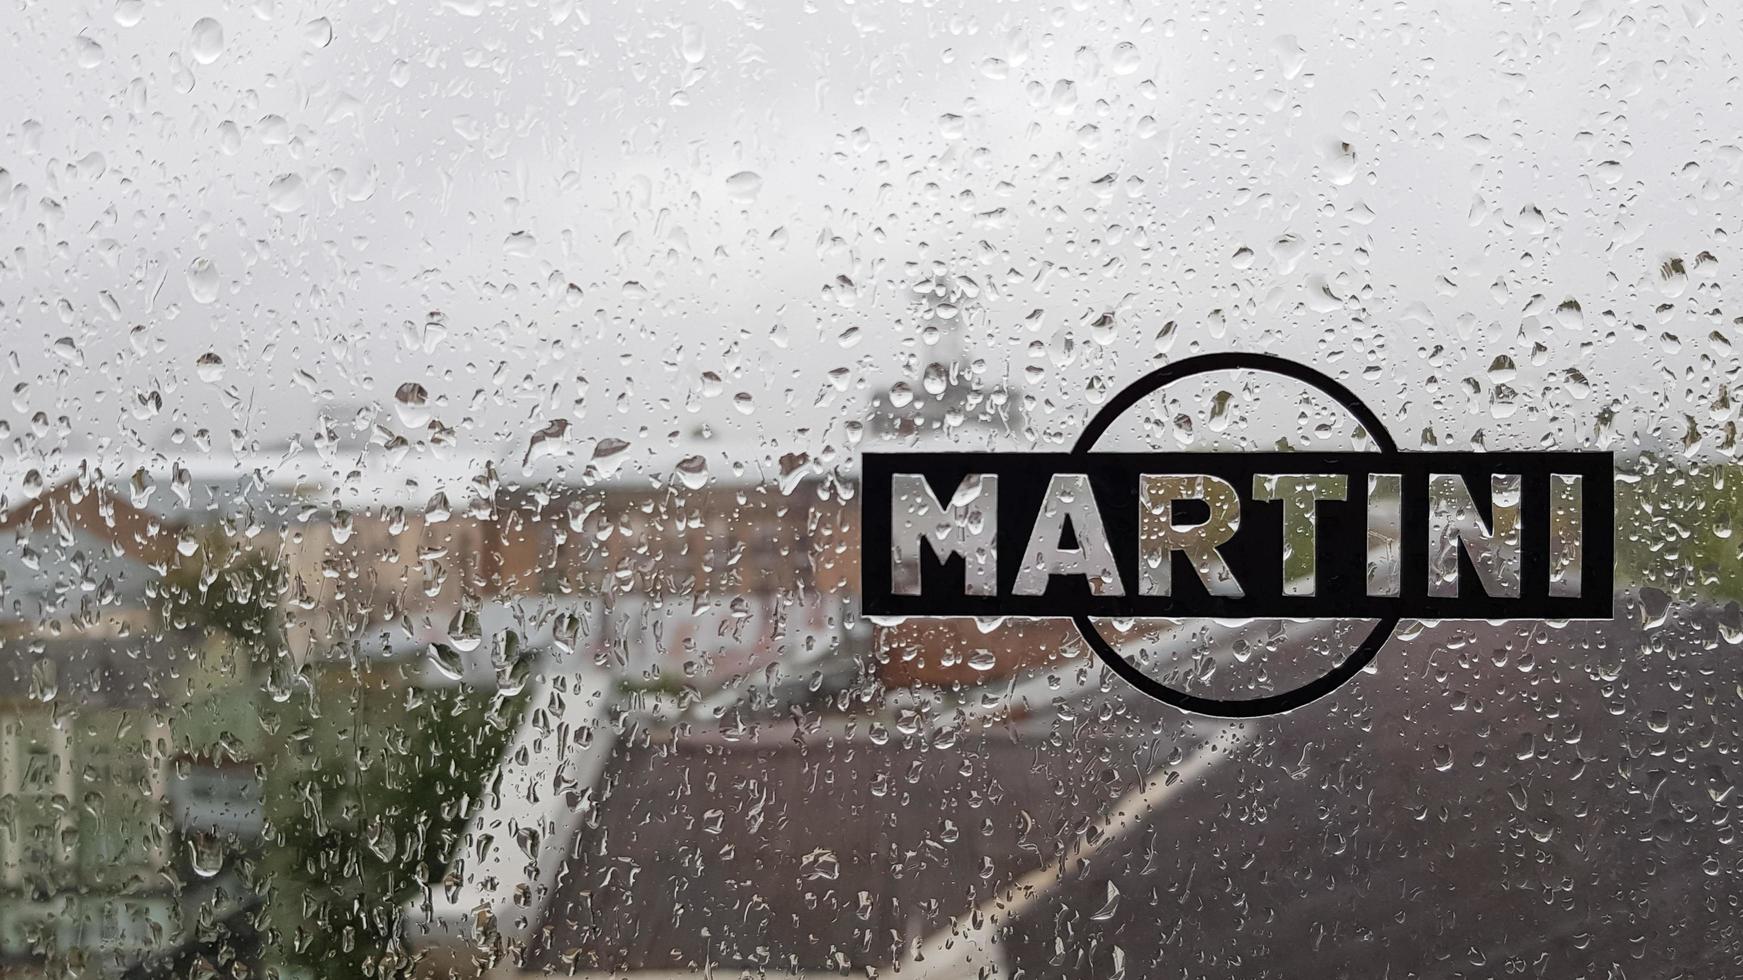 martini sticker-logo. een merk van in Italië gemaakte vermouths en mousserende wijnen. waterdruppel op glazen raam tijdens regen met onscherpe achtergrond van stadsscène. Italië, Turijn - 1 oktober 2020. foto